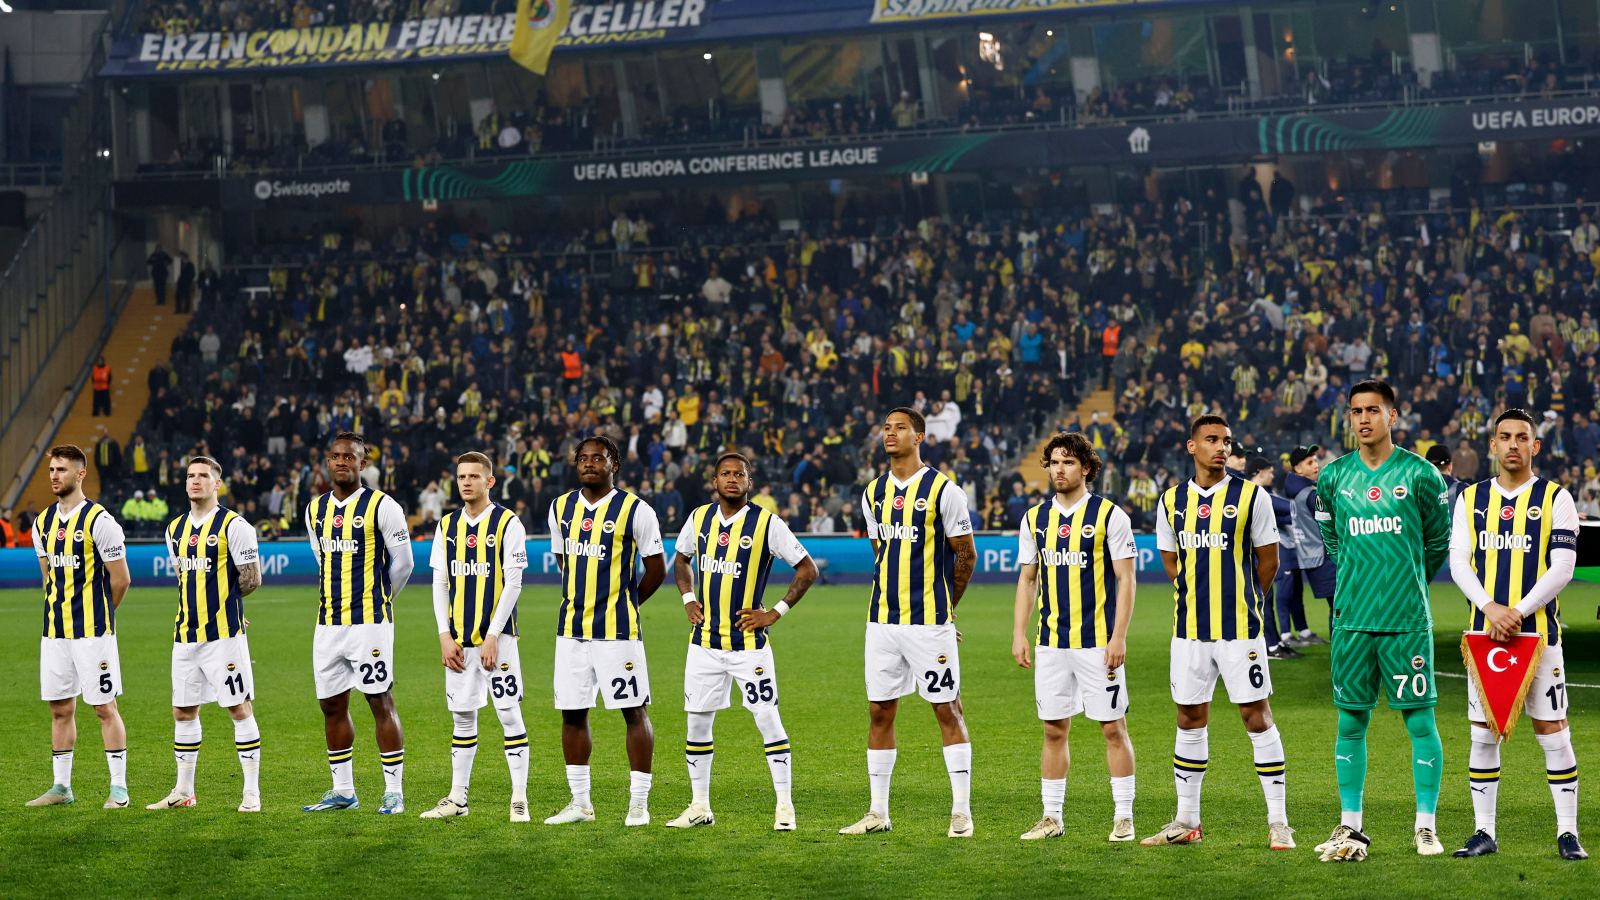 Πιθανός ο κίνδυνος να χάσει έξι ξένους παίκτες σε περίπτωση αποχώρησης από το τουρκικό πρωτάθλημα